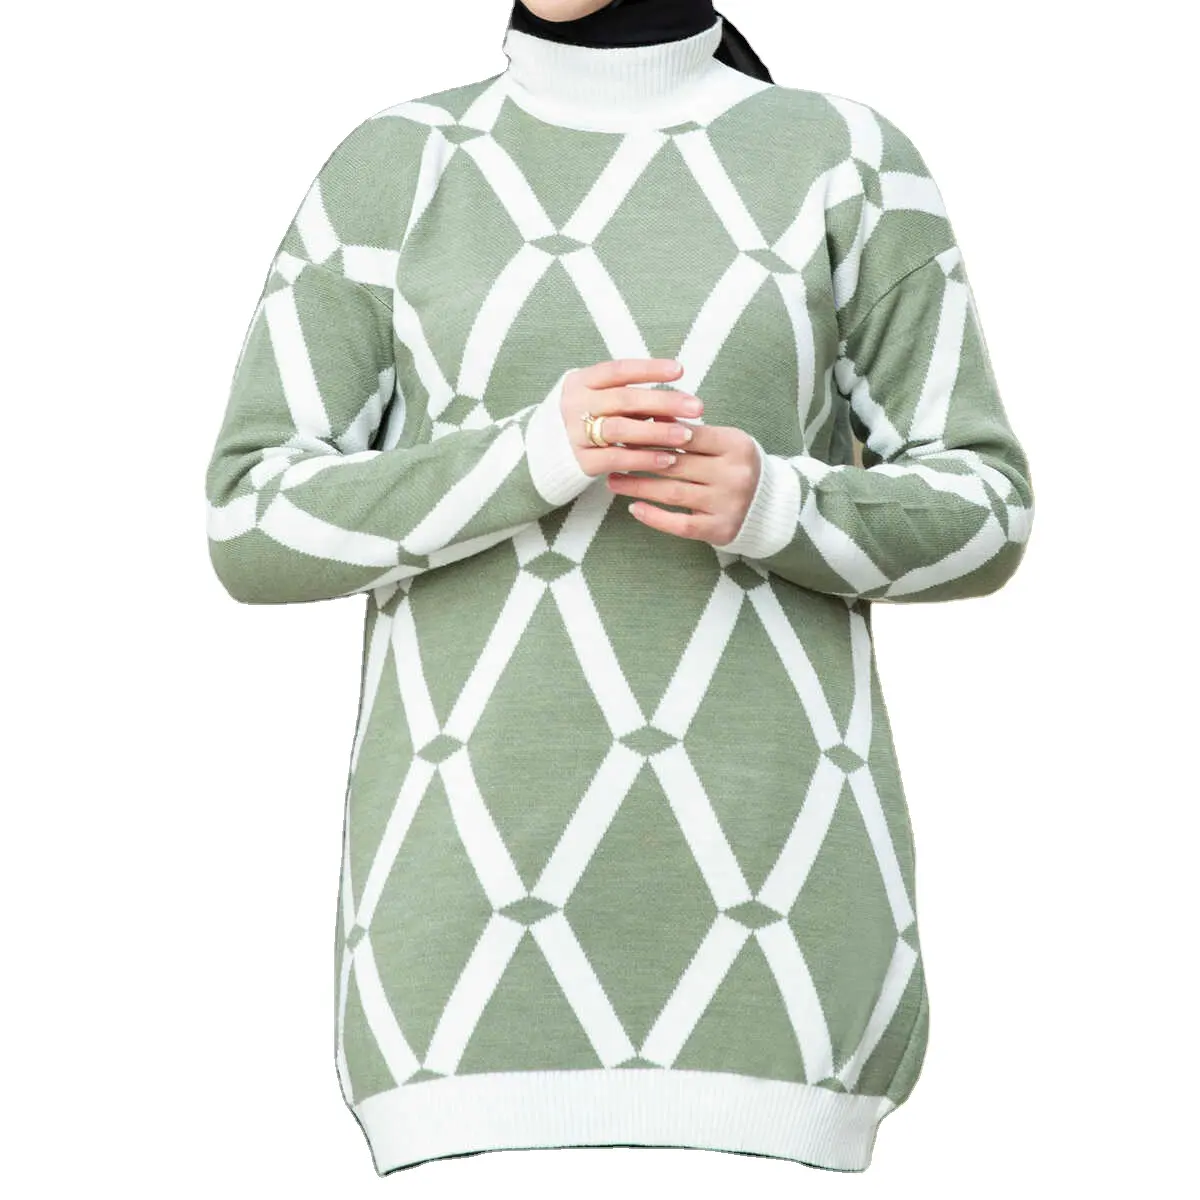 Wholesale Muslim Women Islam Clothing Patterned Hijab Knitwear Tunic